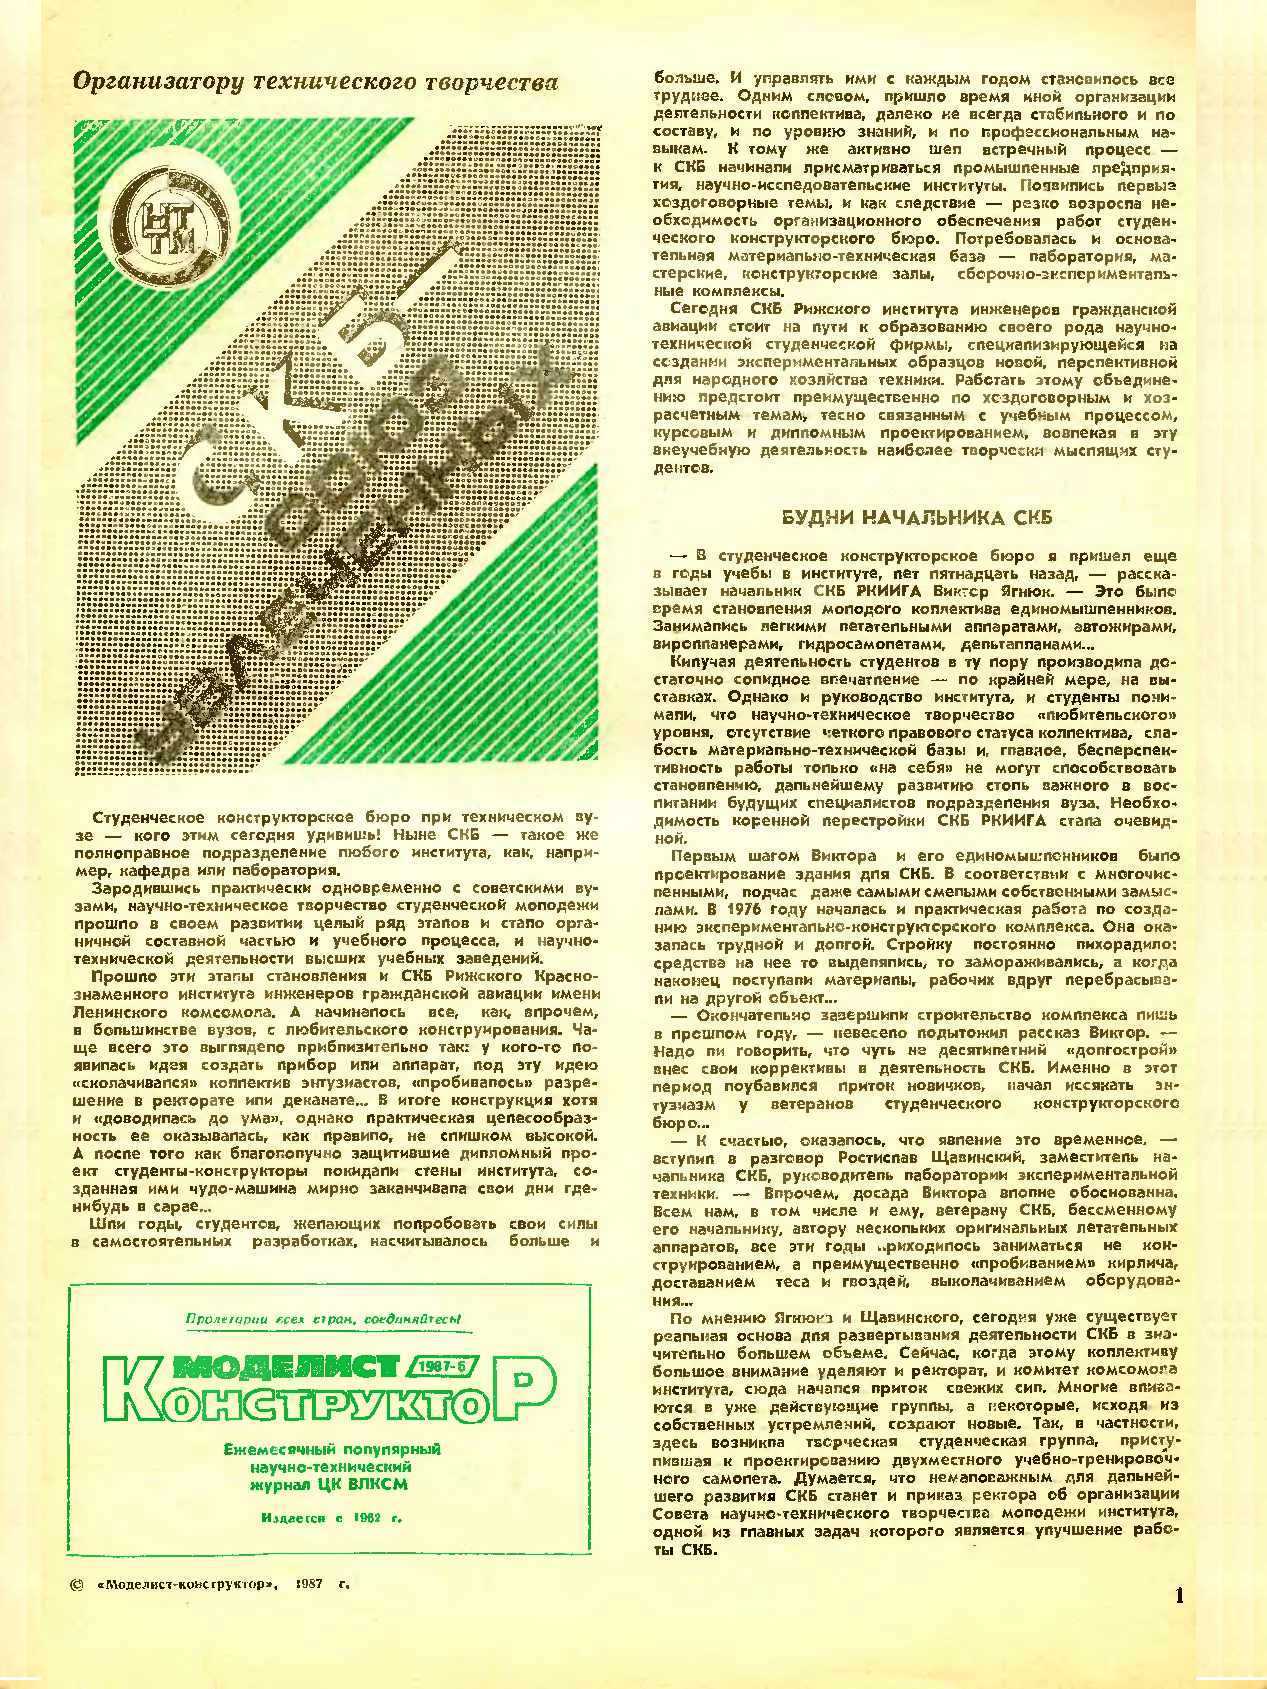 МК 6, 1987, 1 c.